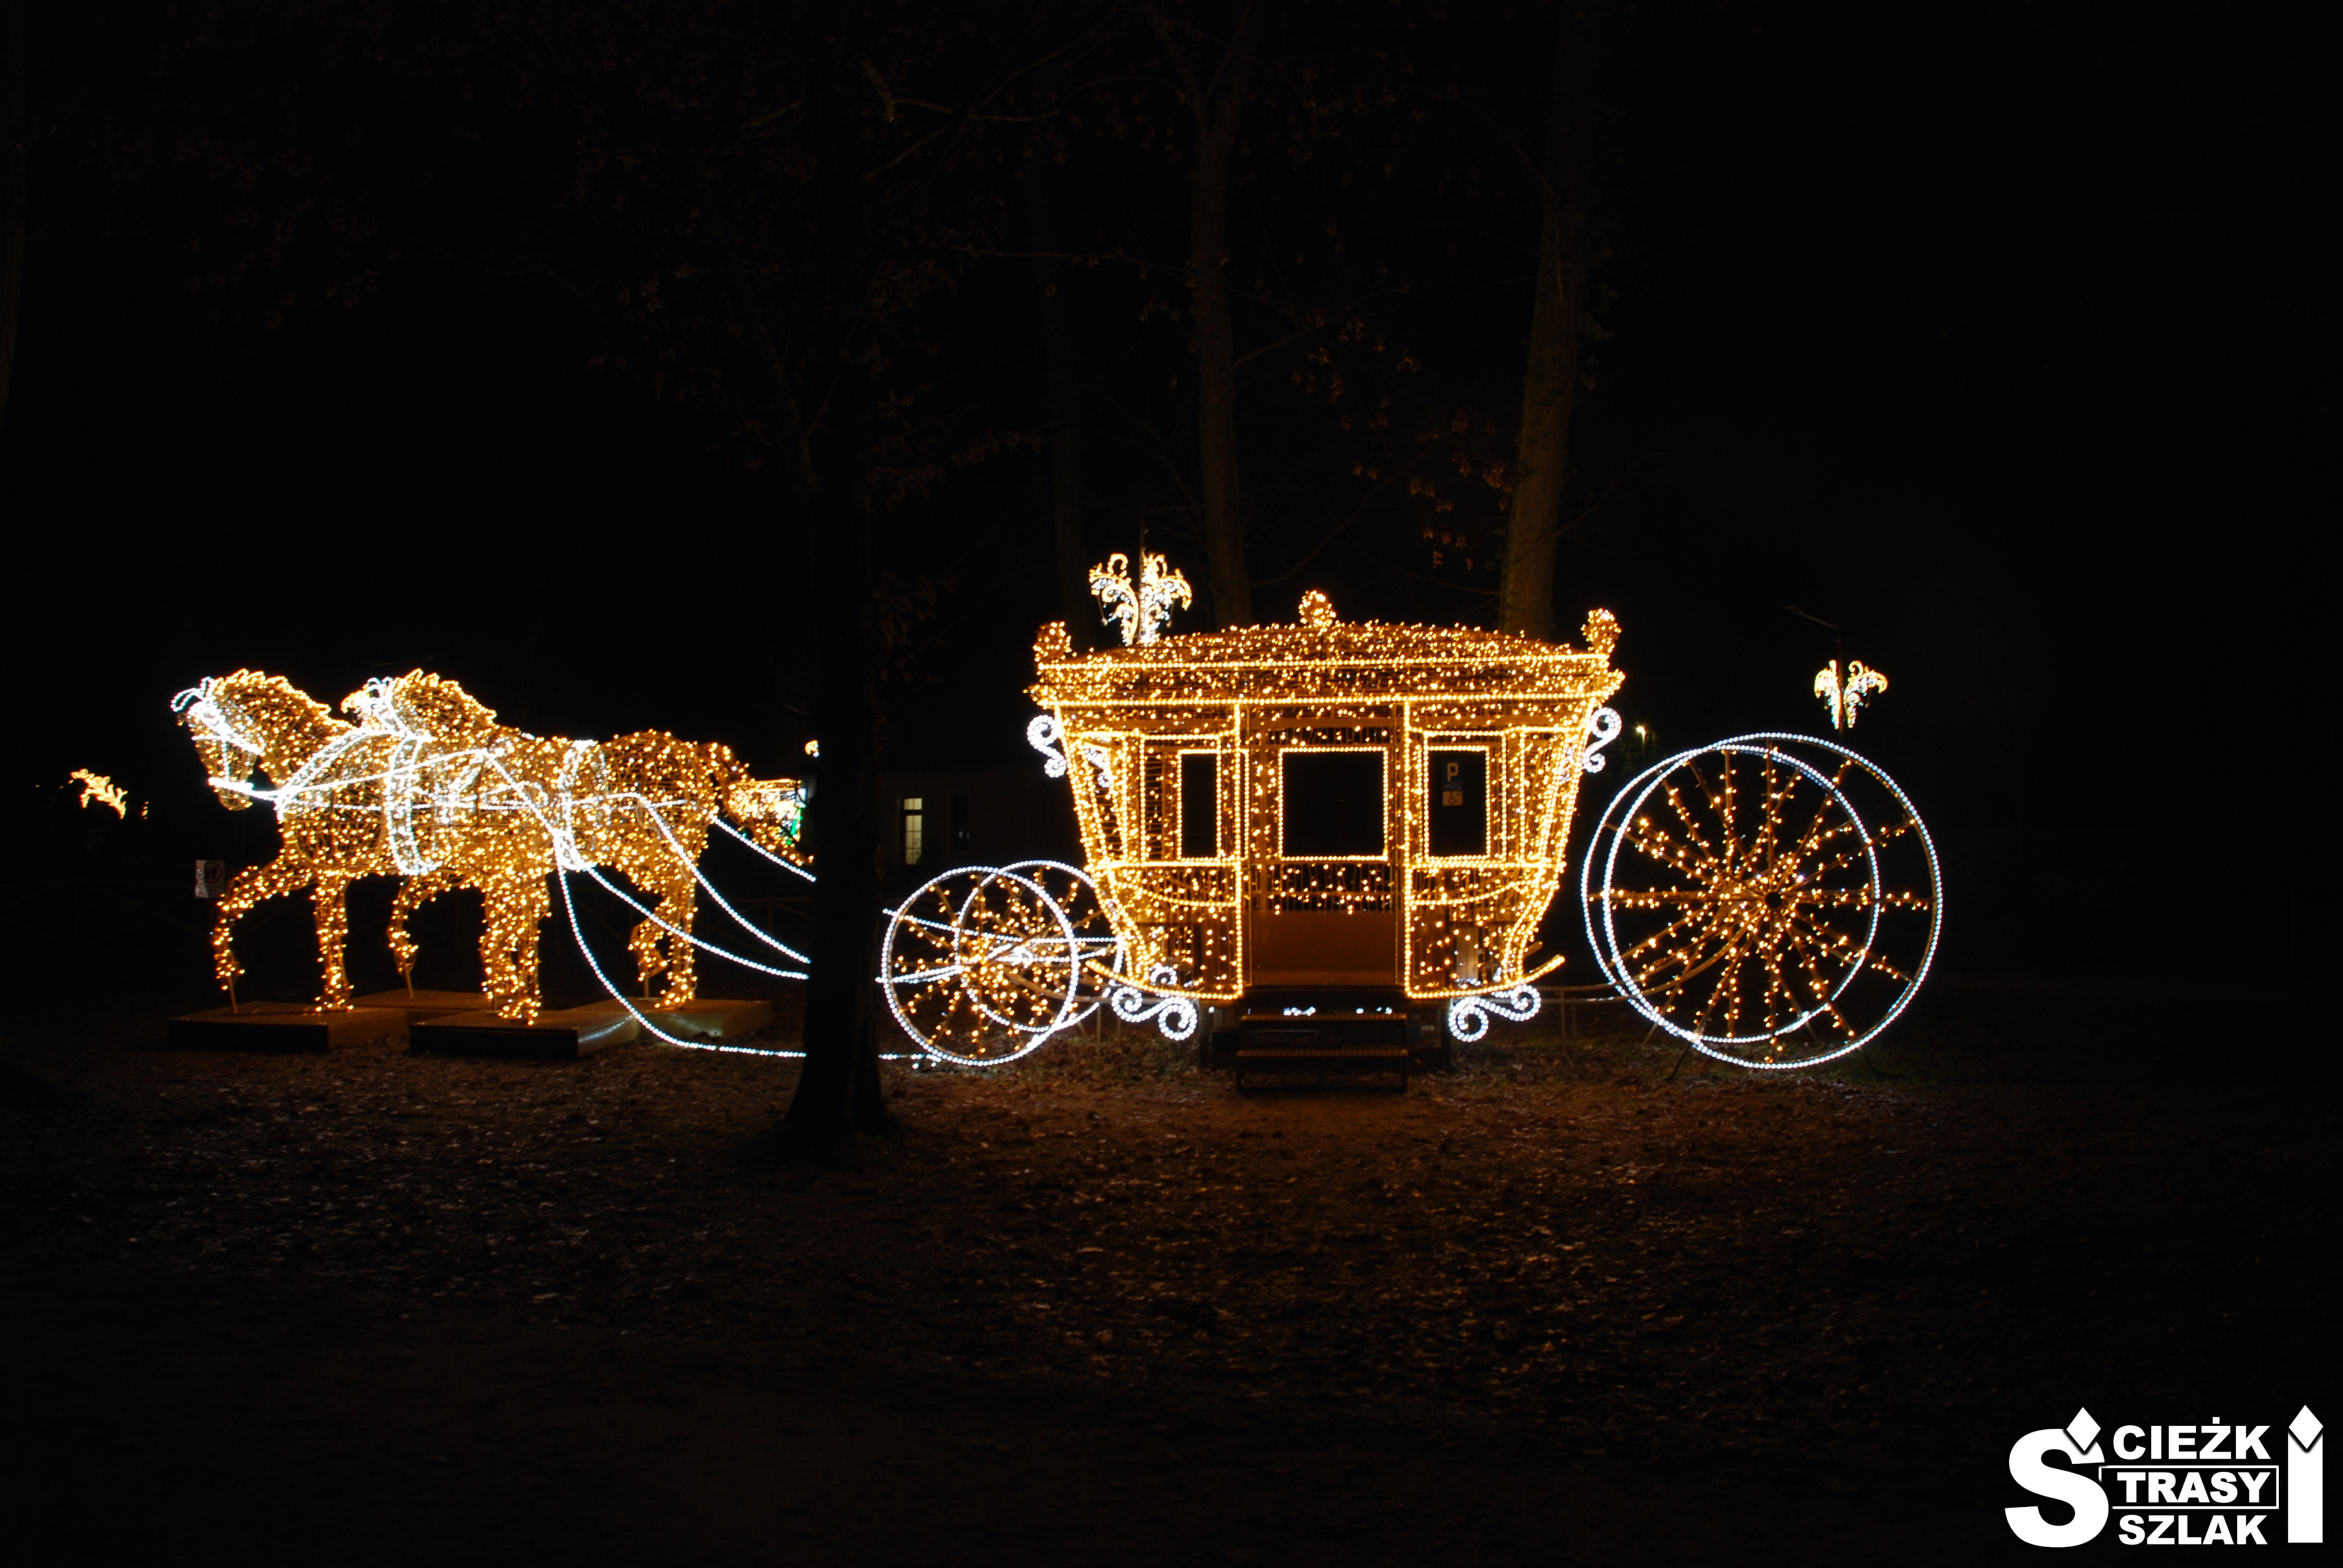 Podświetlona złota kareta zaprzężona do podświetlonych na złoto dwóch koni w Parku przy Pałacu Zatoń